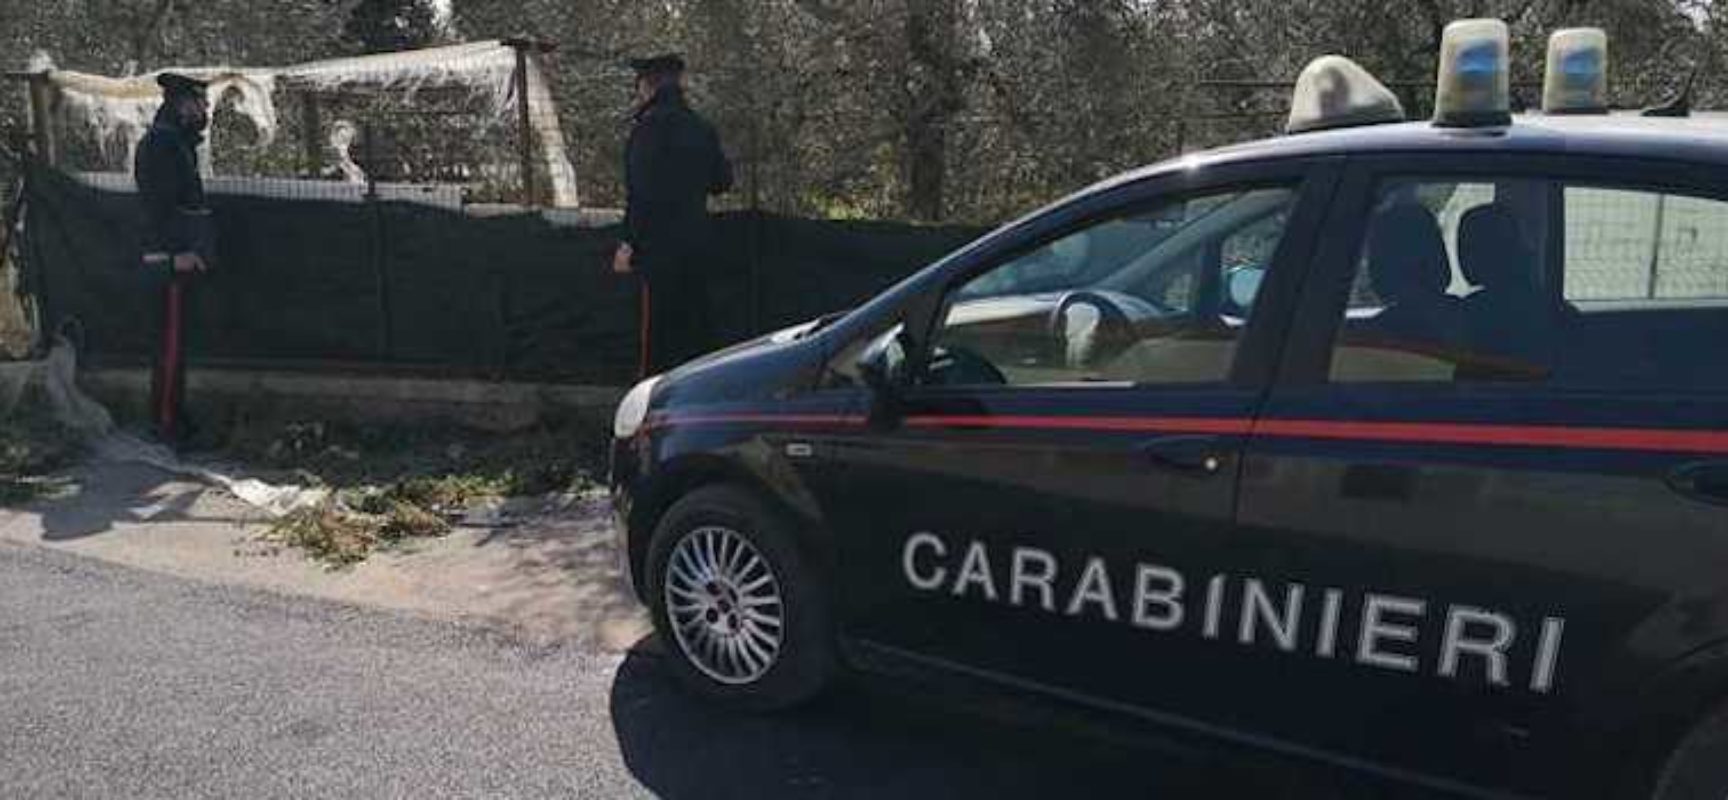 Breve inseguimento in via Ruvo: carabinieri arrestano due ragazzi per spaccio